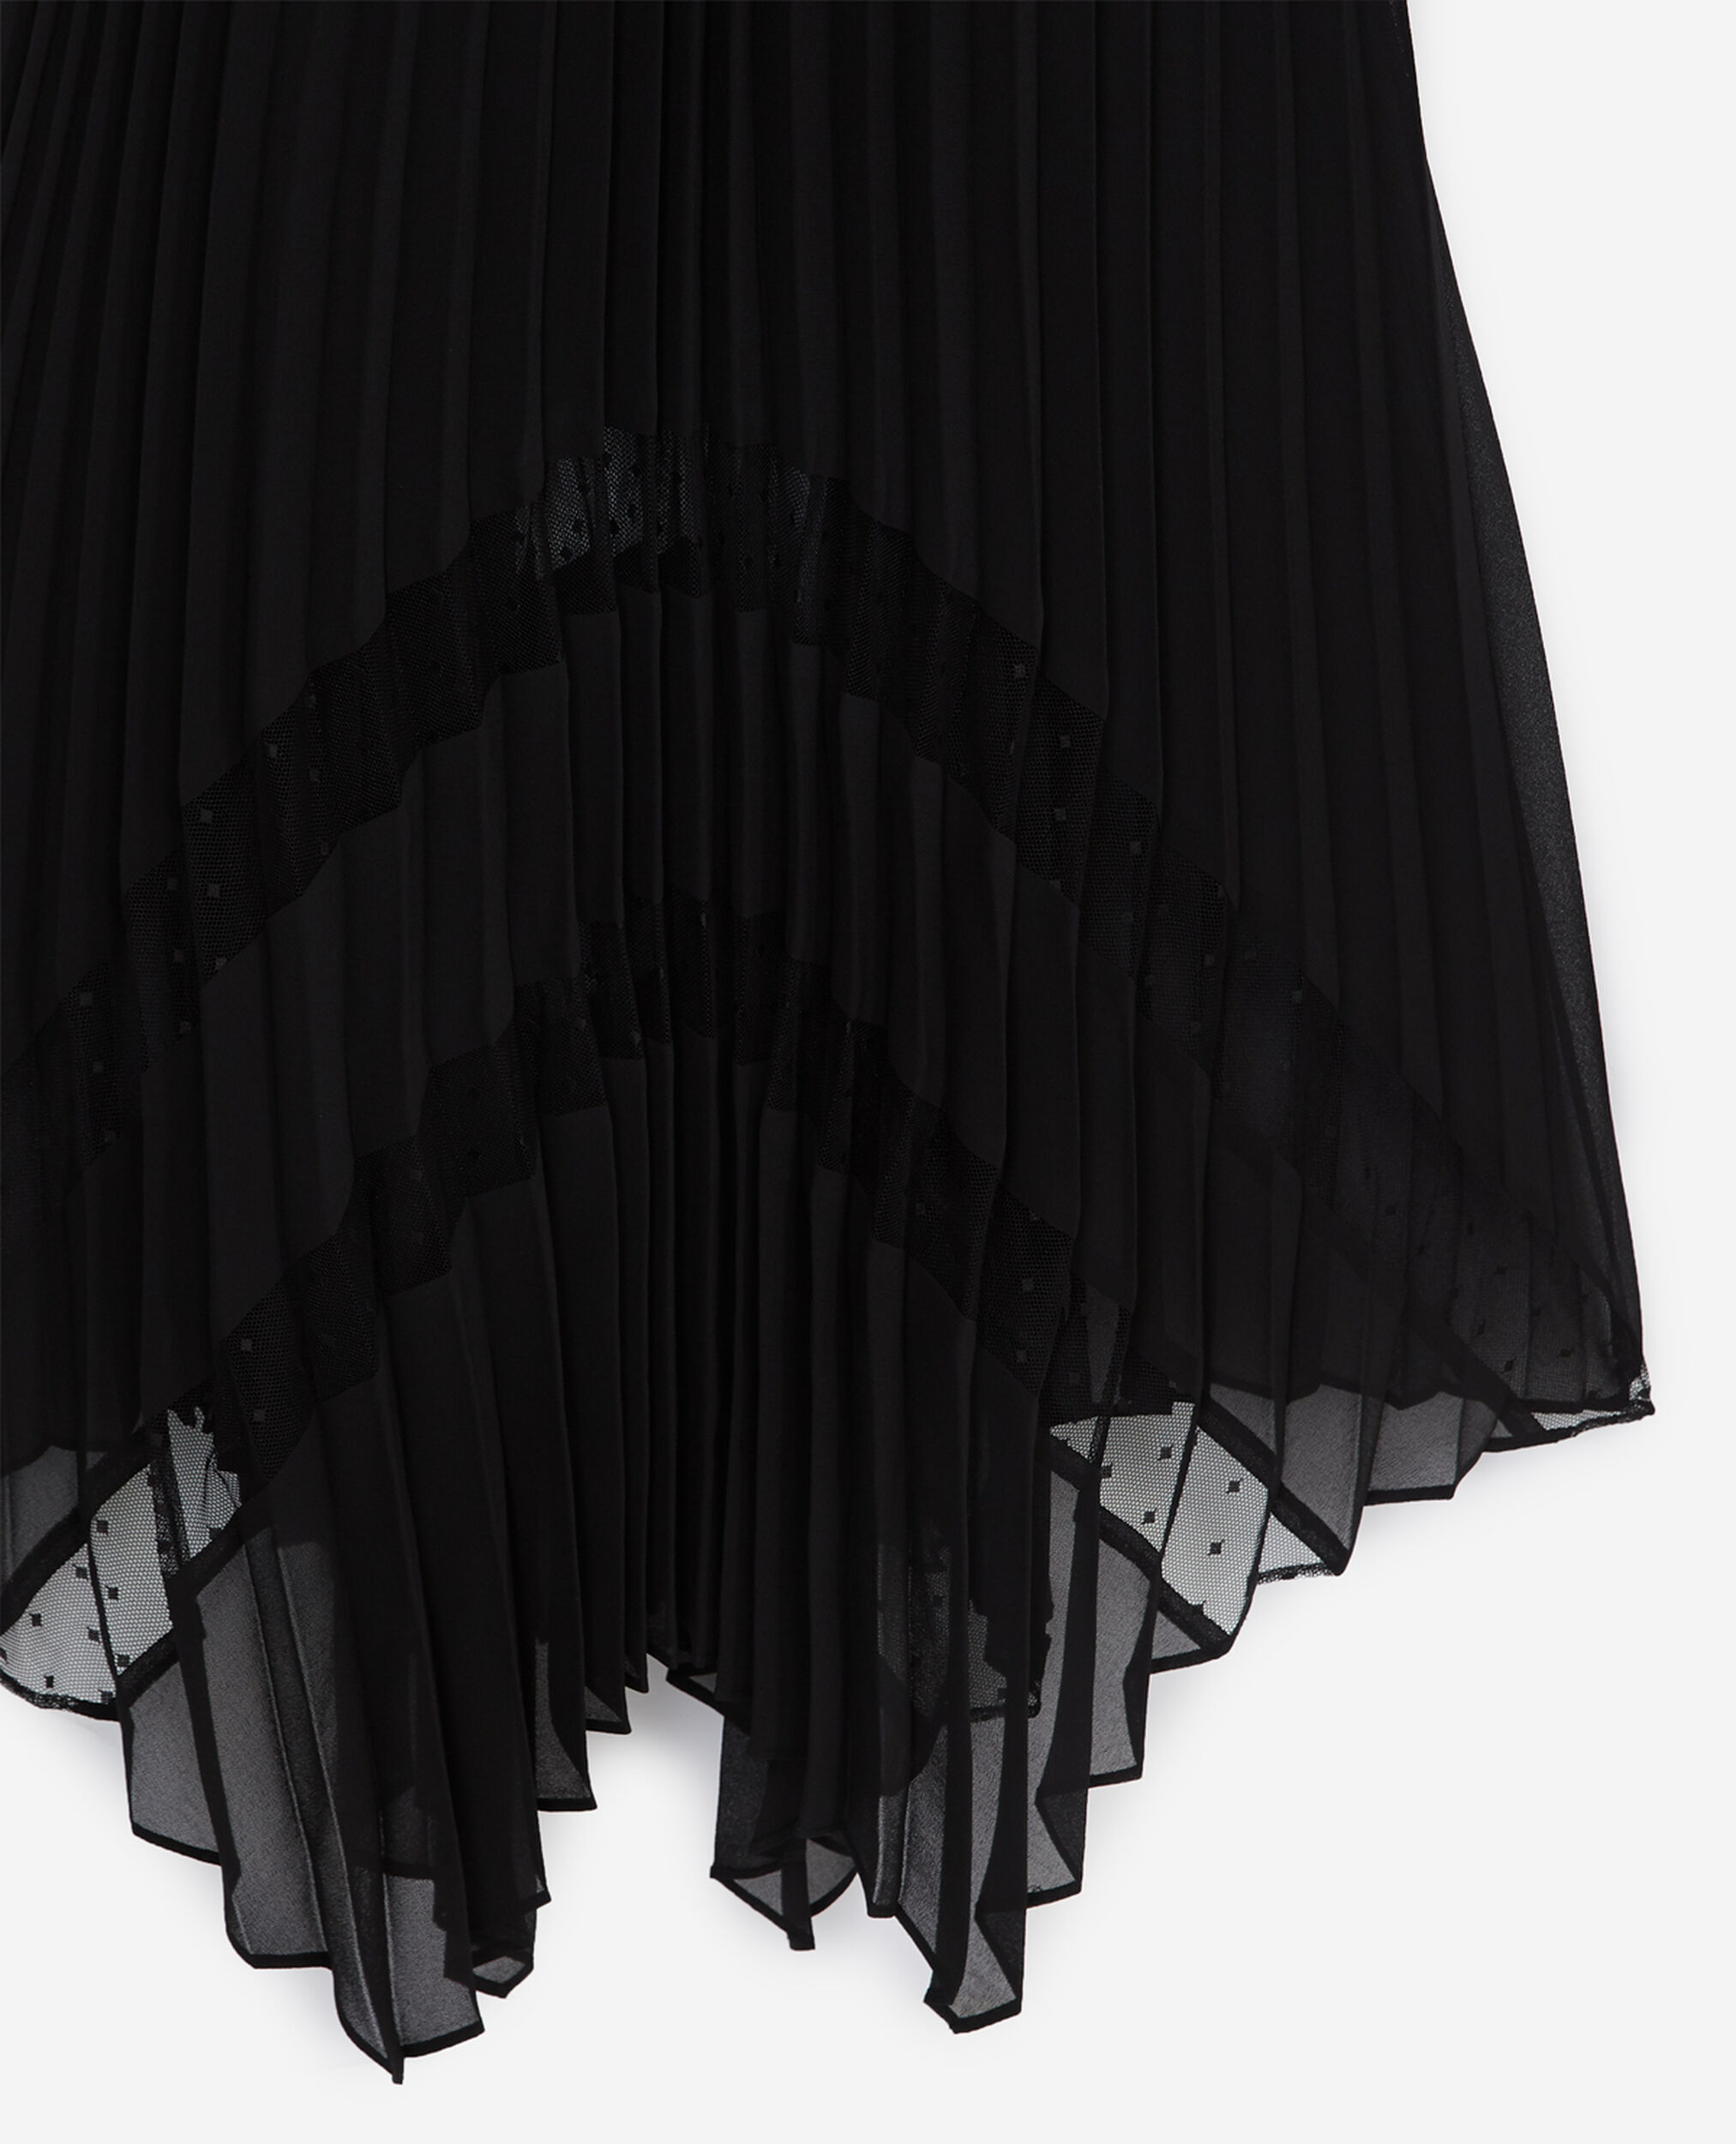 Robe longue plissée noire, BLACK, hi-res image number null